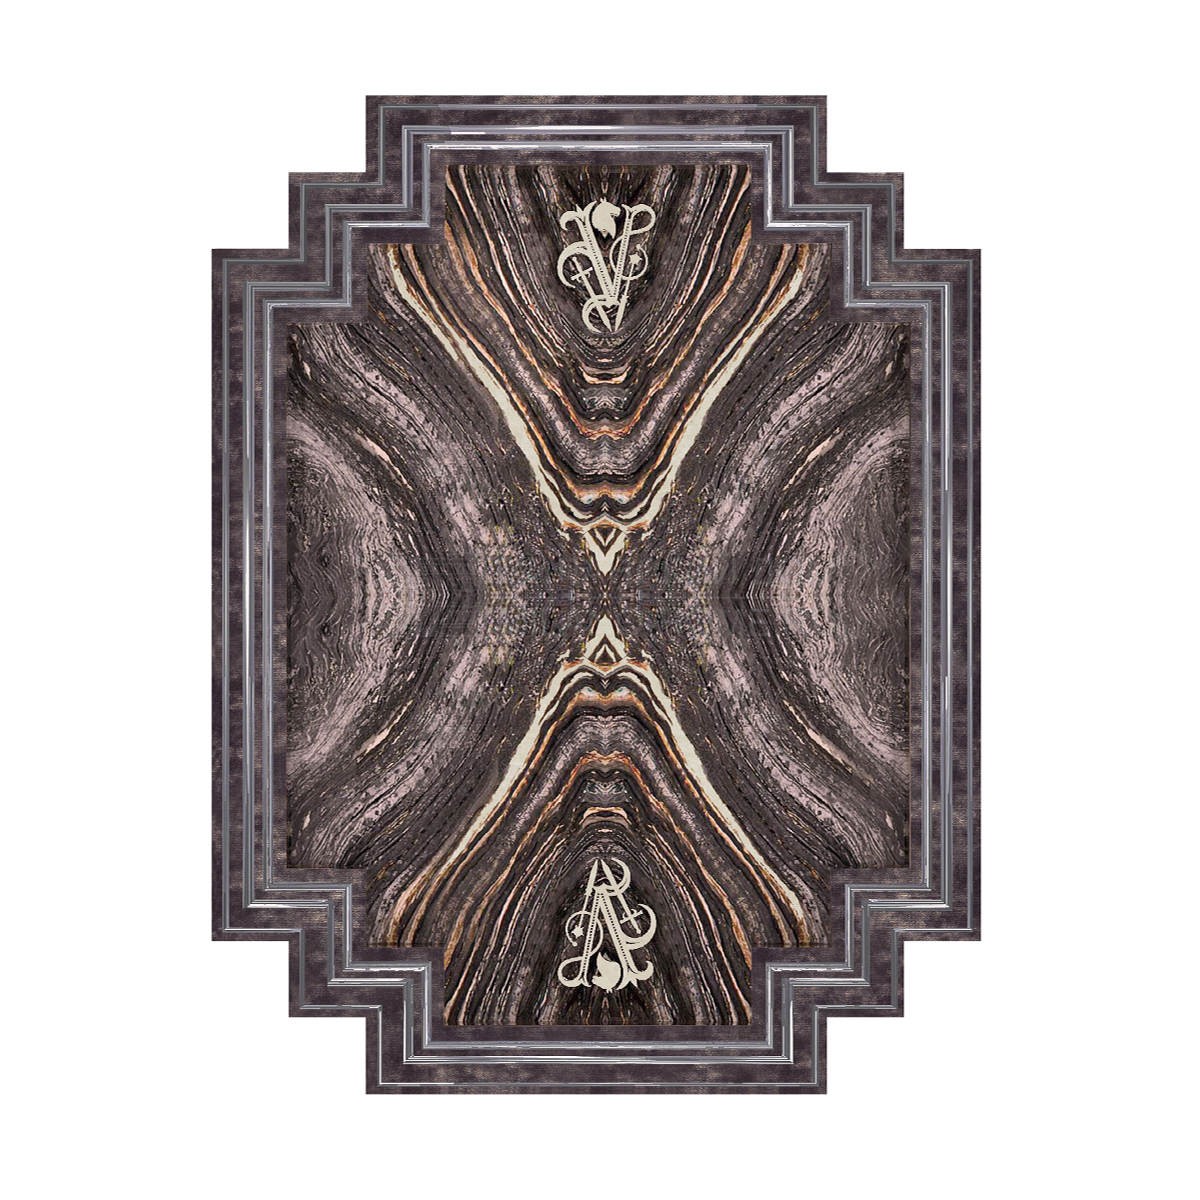 Ковер Enigma Dark carpet из Италии фабрики IPE CAVALLI VISIONNAIRE